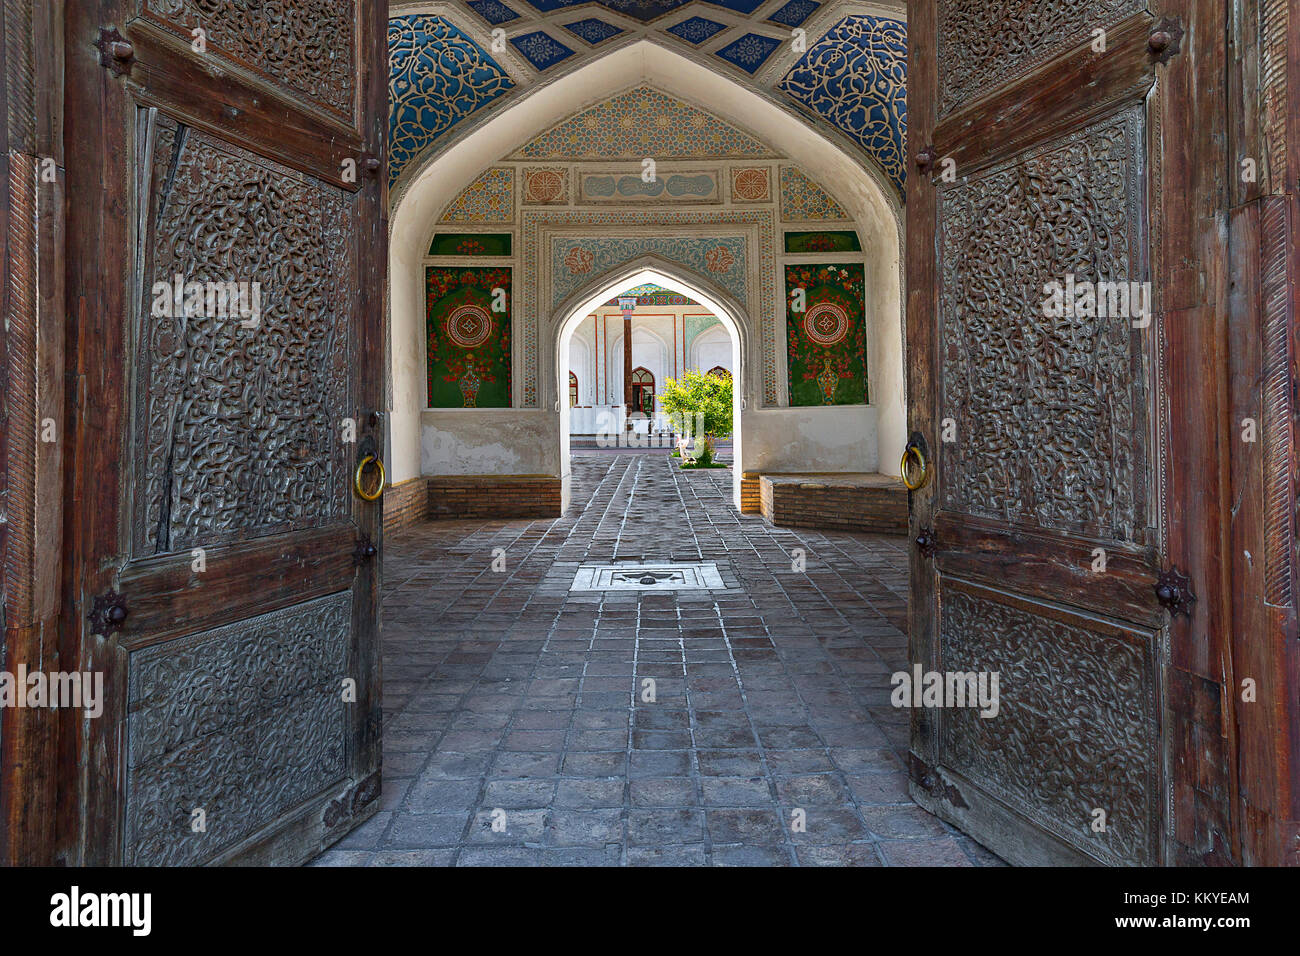 Ancient palace of Khudayar through its wooden doors, in Kokand, Uzbekistan. Stock Photo